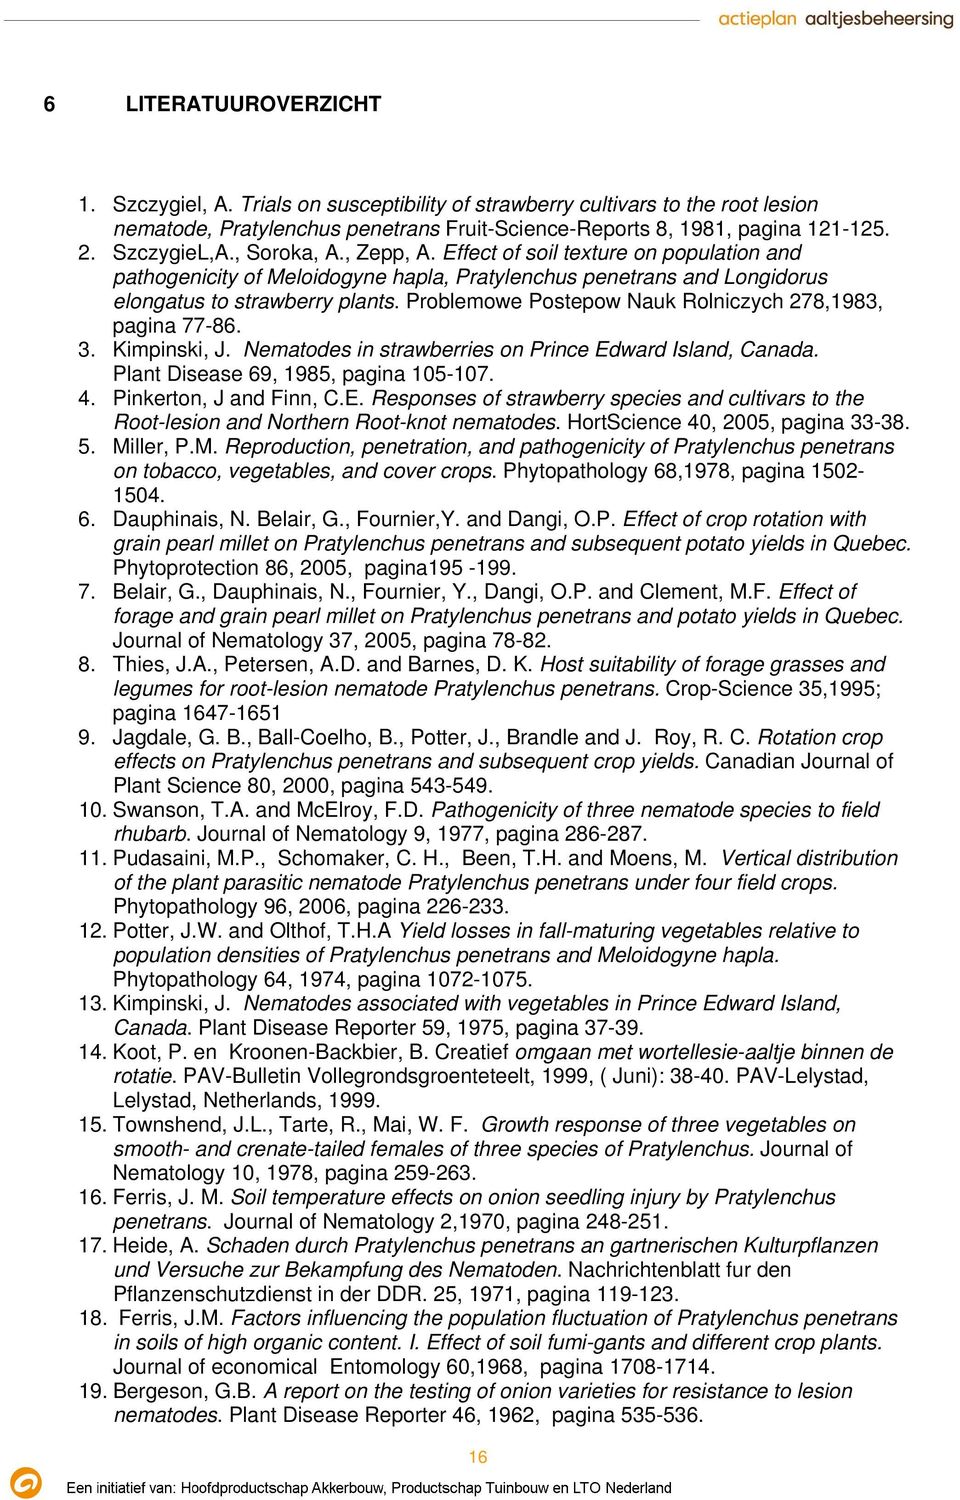 Problemowe Postepow Nauk Rolniczych 278,1983, pagina 77-86. 3. Kimpinski, J. Nematodes in strawberries on Prince Edward Island, Canada. Plant Disease 69, 1985, pagina 105-107. 4.